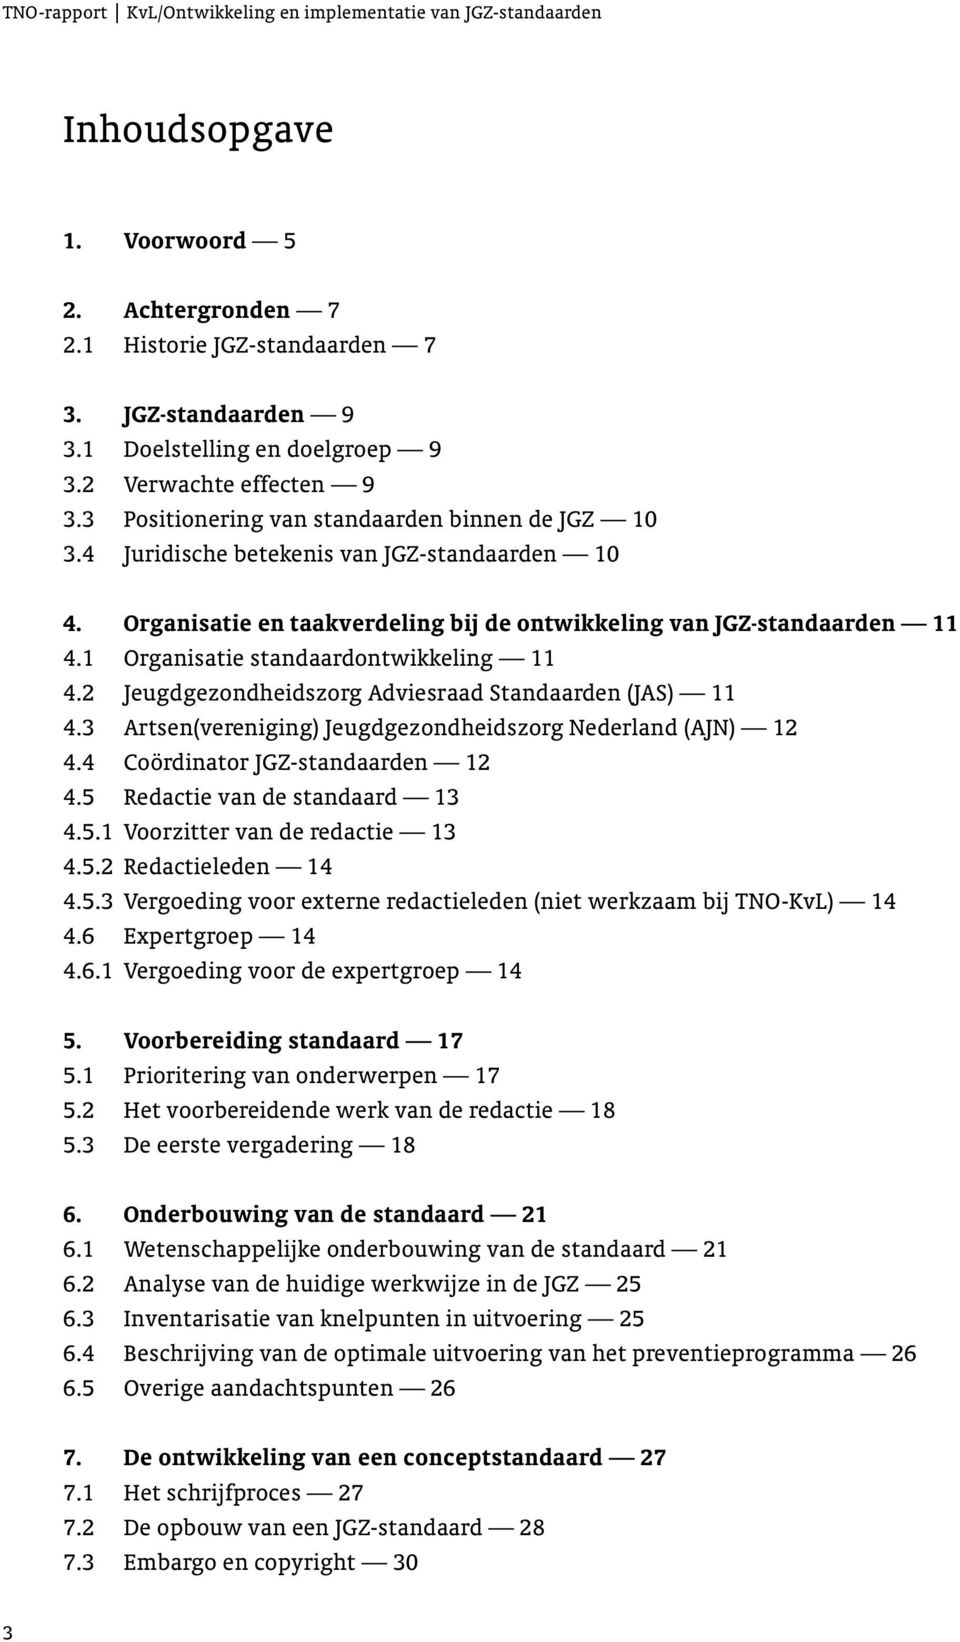 1 Organisatie standaardontwikkeling 11 4.2 Jeugdgezondheidszorg Adviesraad Standaarden (JAS) 11 4.3 Artsen(vereniging) Jeugdgezondheidszorg Nederland (AJN) 12 4.4 Coördinator JGZ-standaarden 12 4.